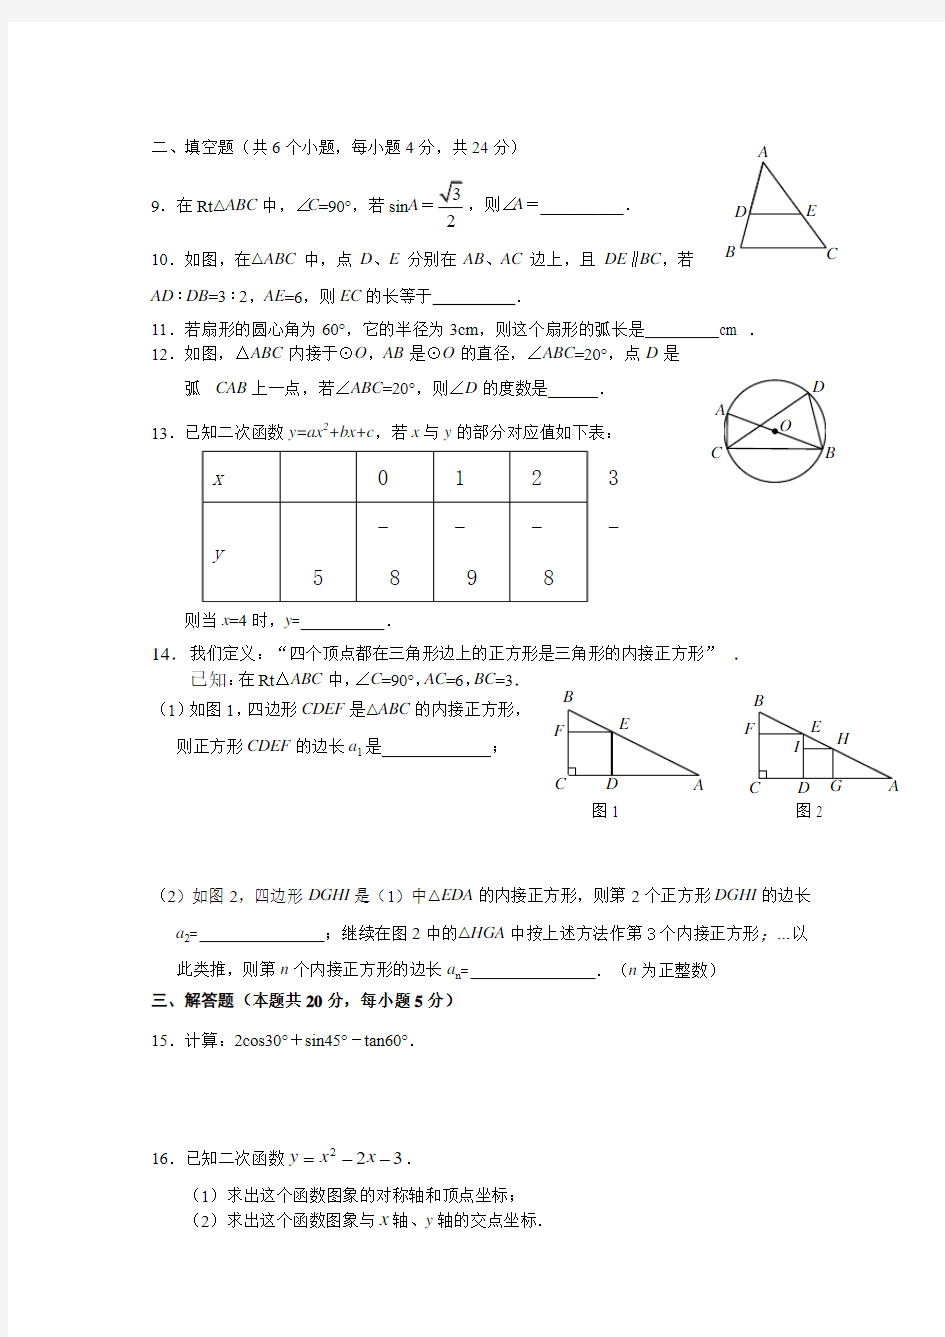 常熟初三数学寒假自主学习材料(2)